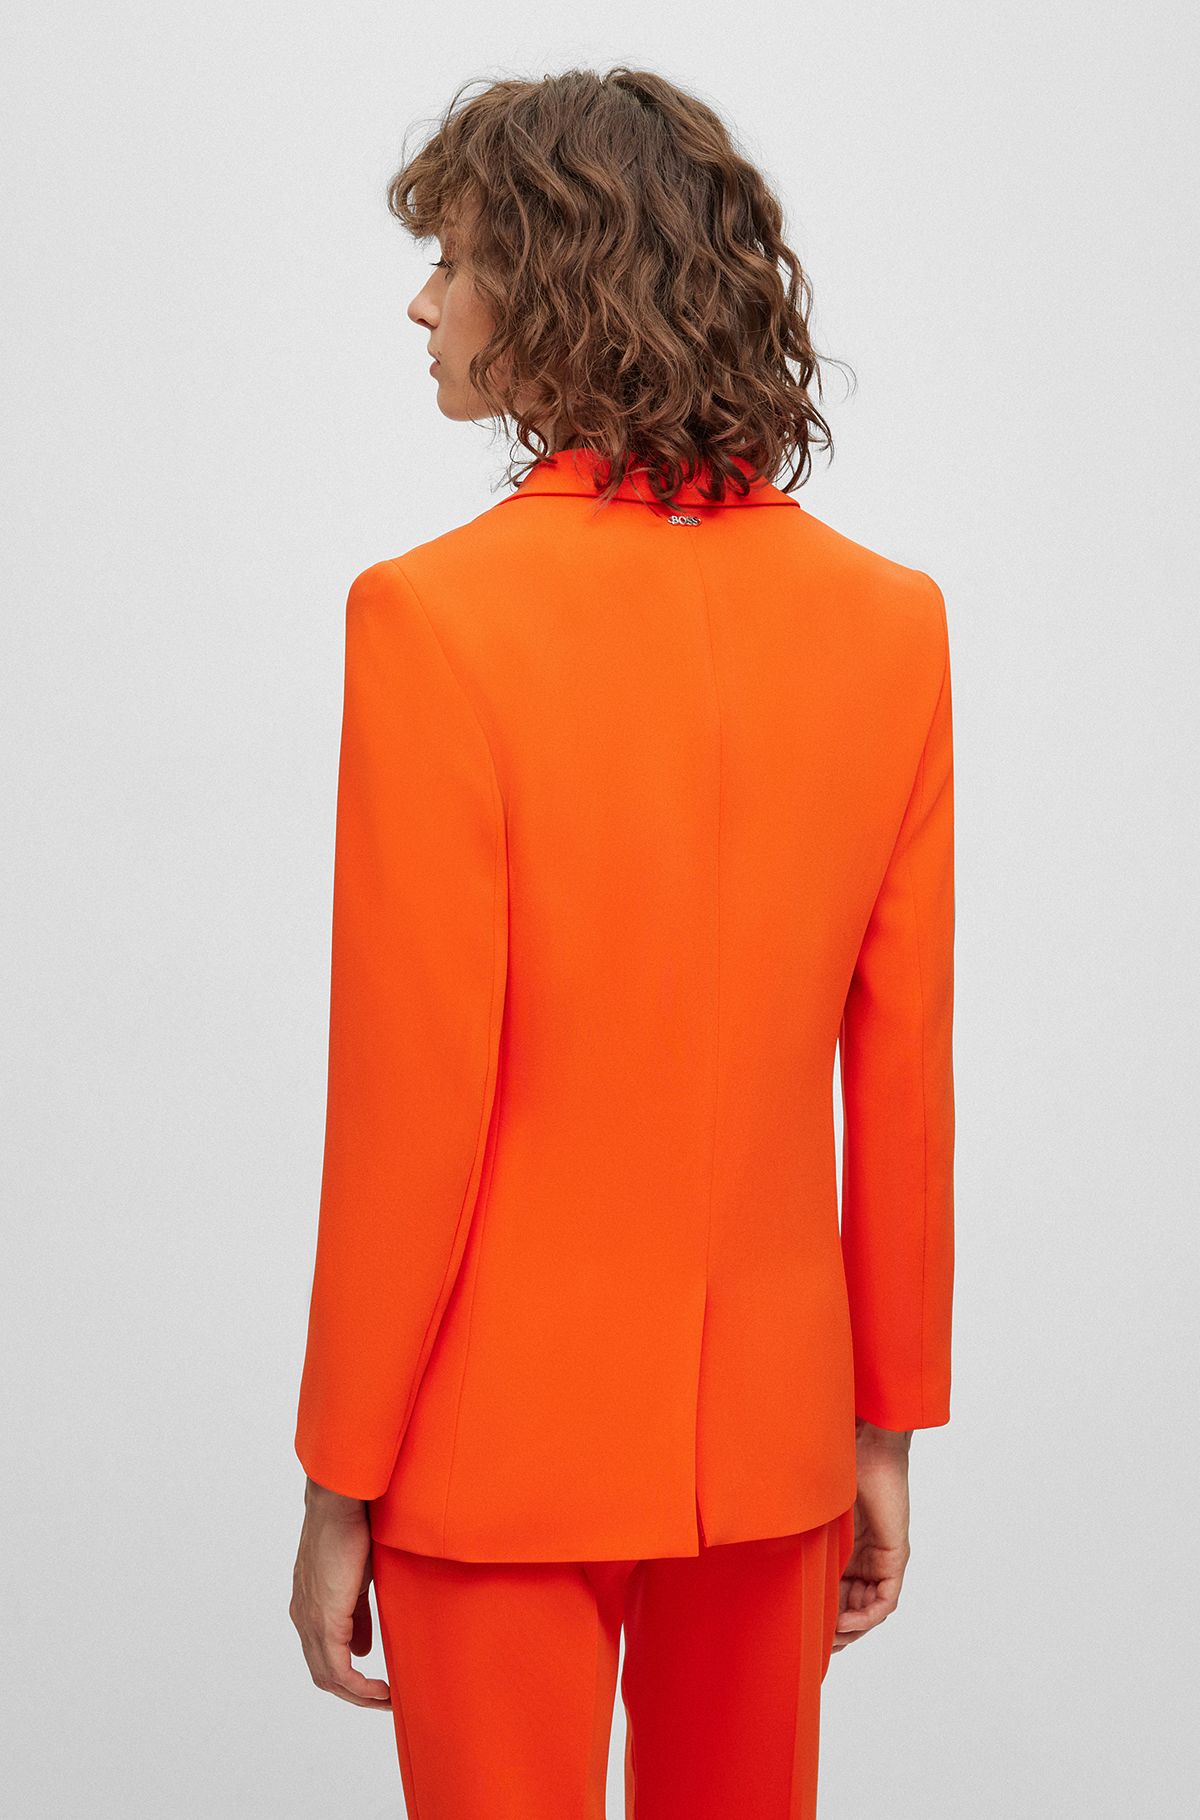 by for Long HUGO Orange Blazers BOSS Elegant Women